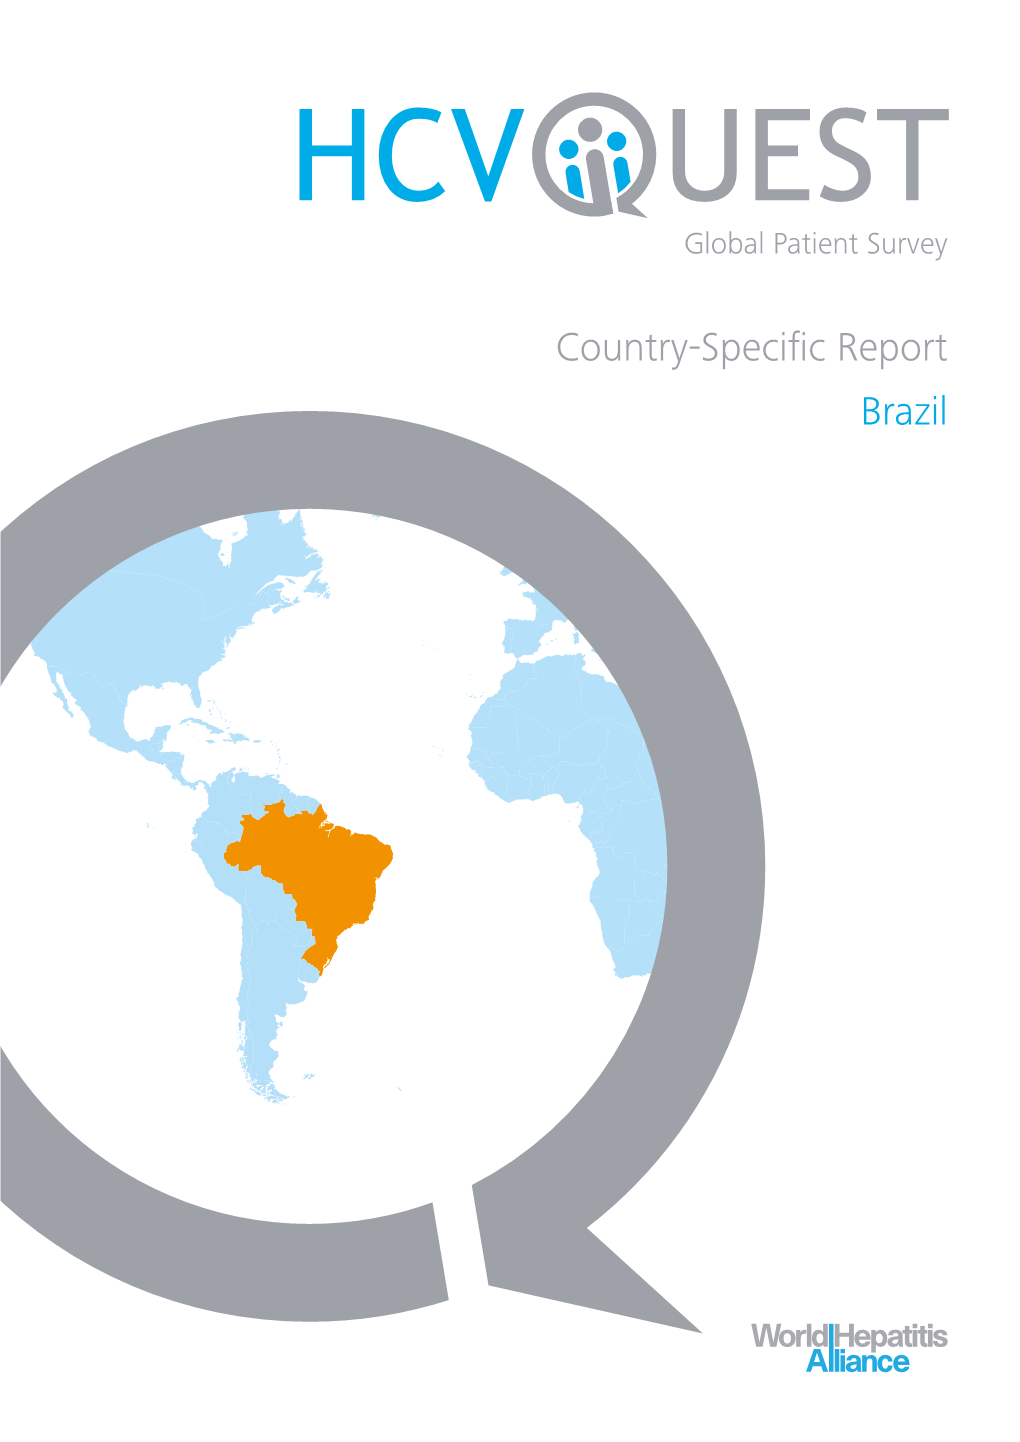 HCV Quest Global Patient Survey Brazil